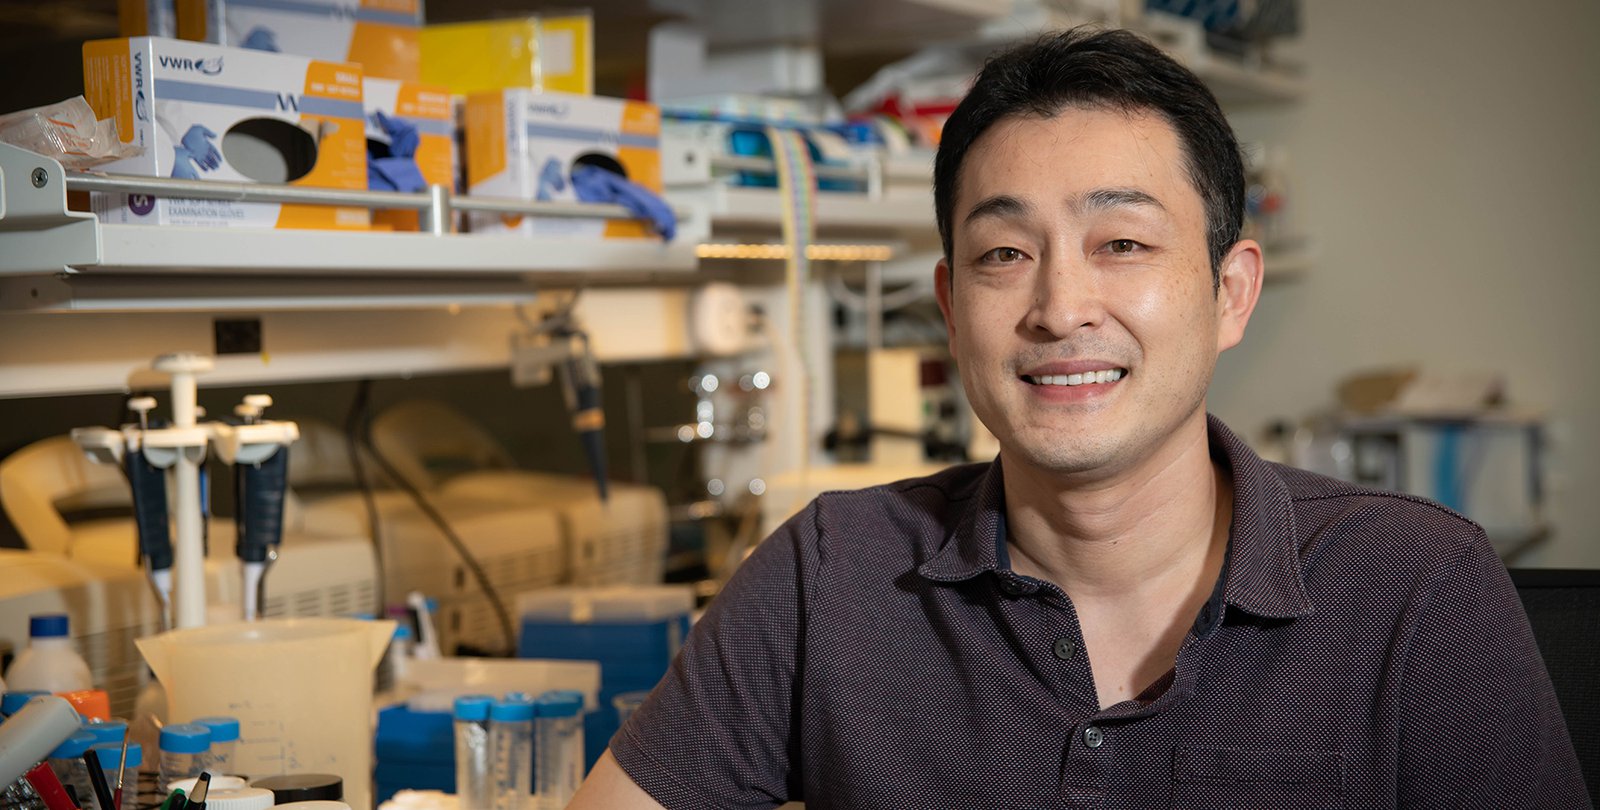 陈天桥神经科学研究所研究员Yuki Oka获得研究先天性脑回路的资助